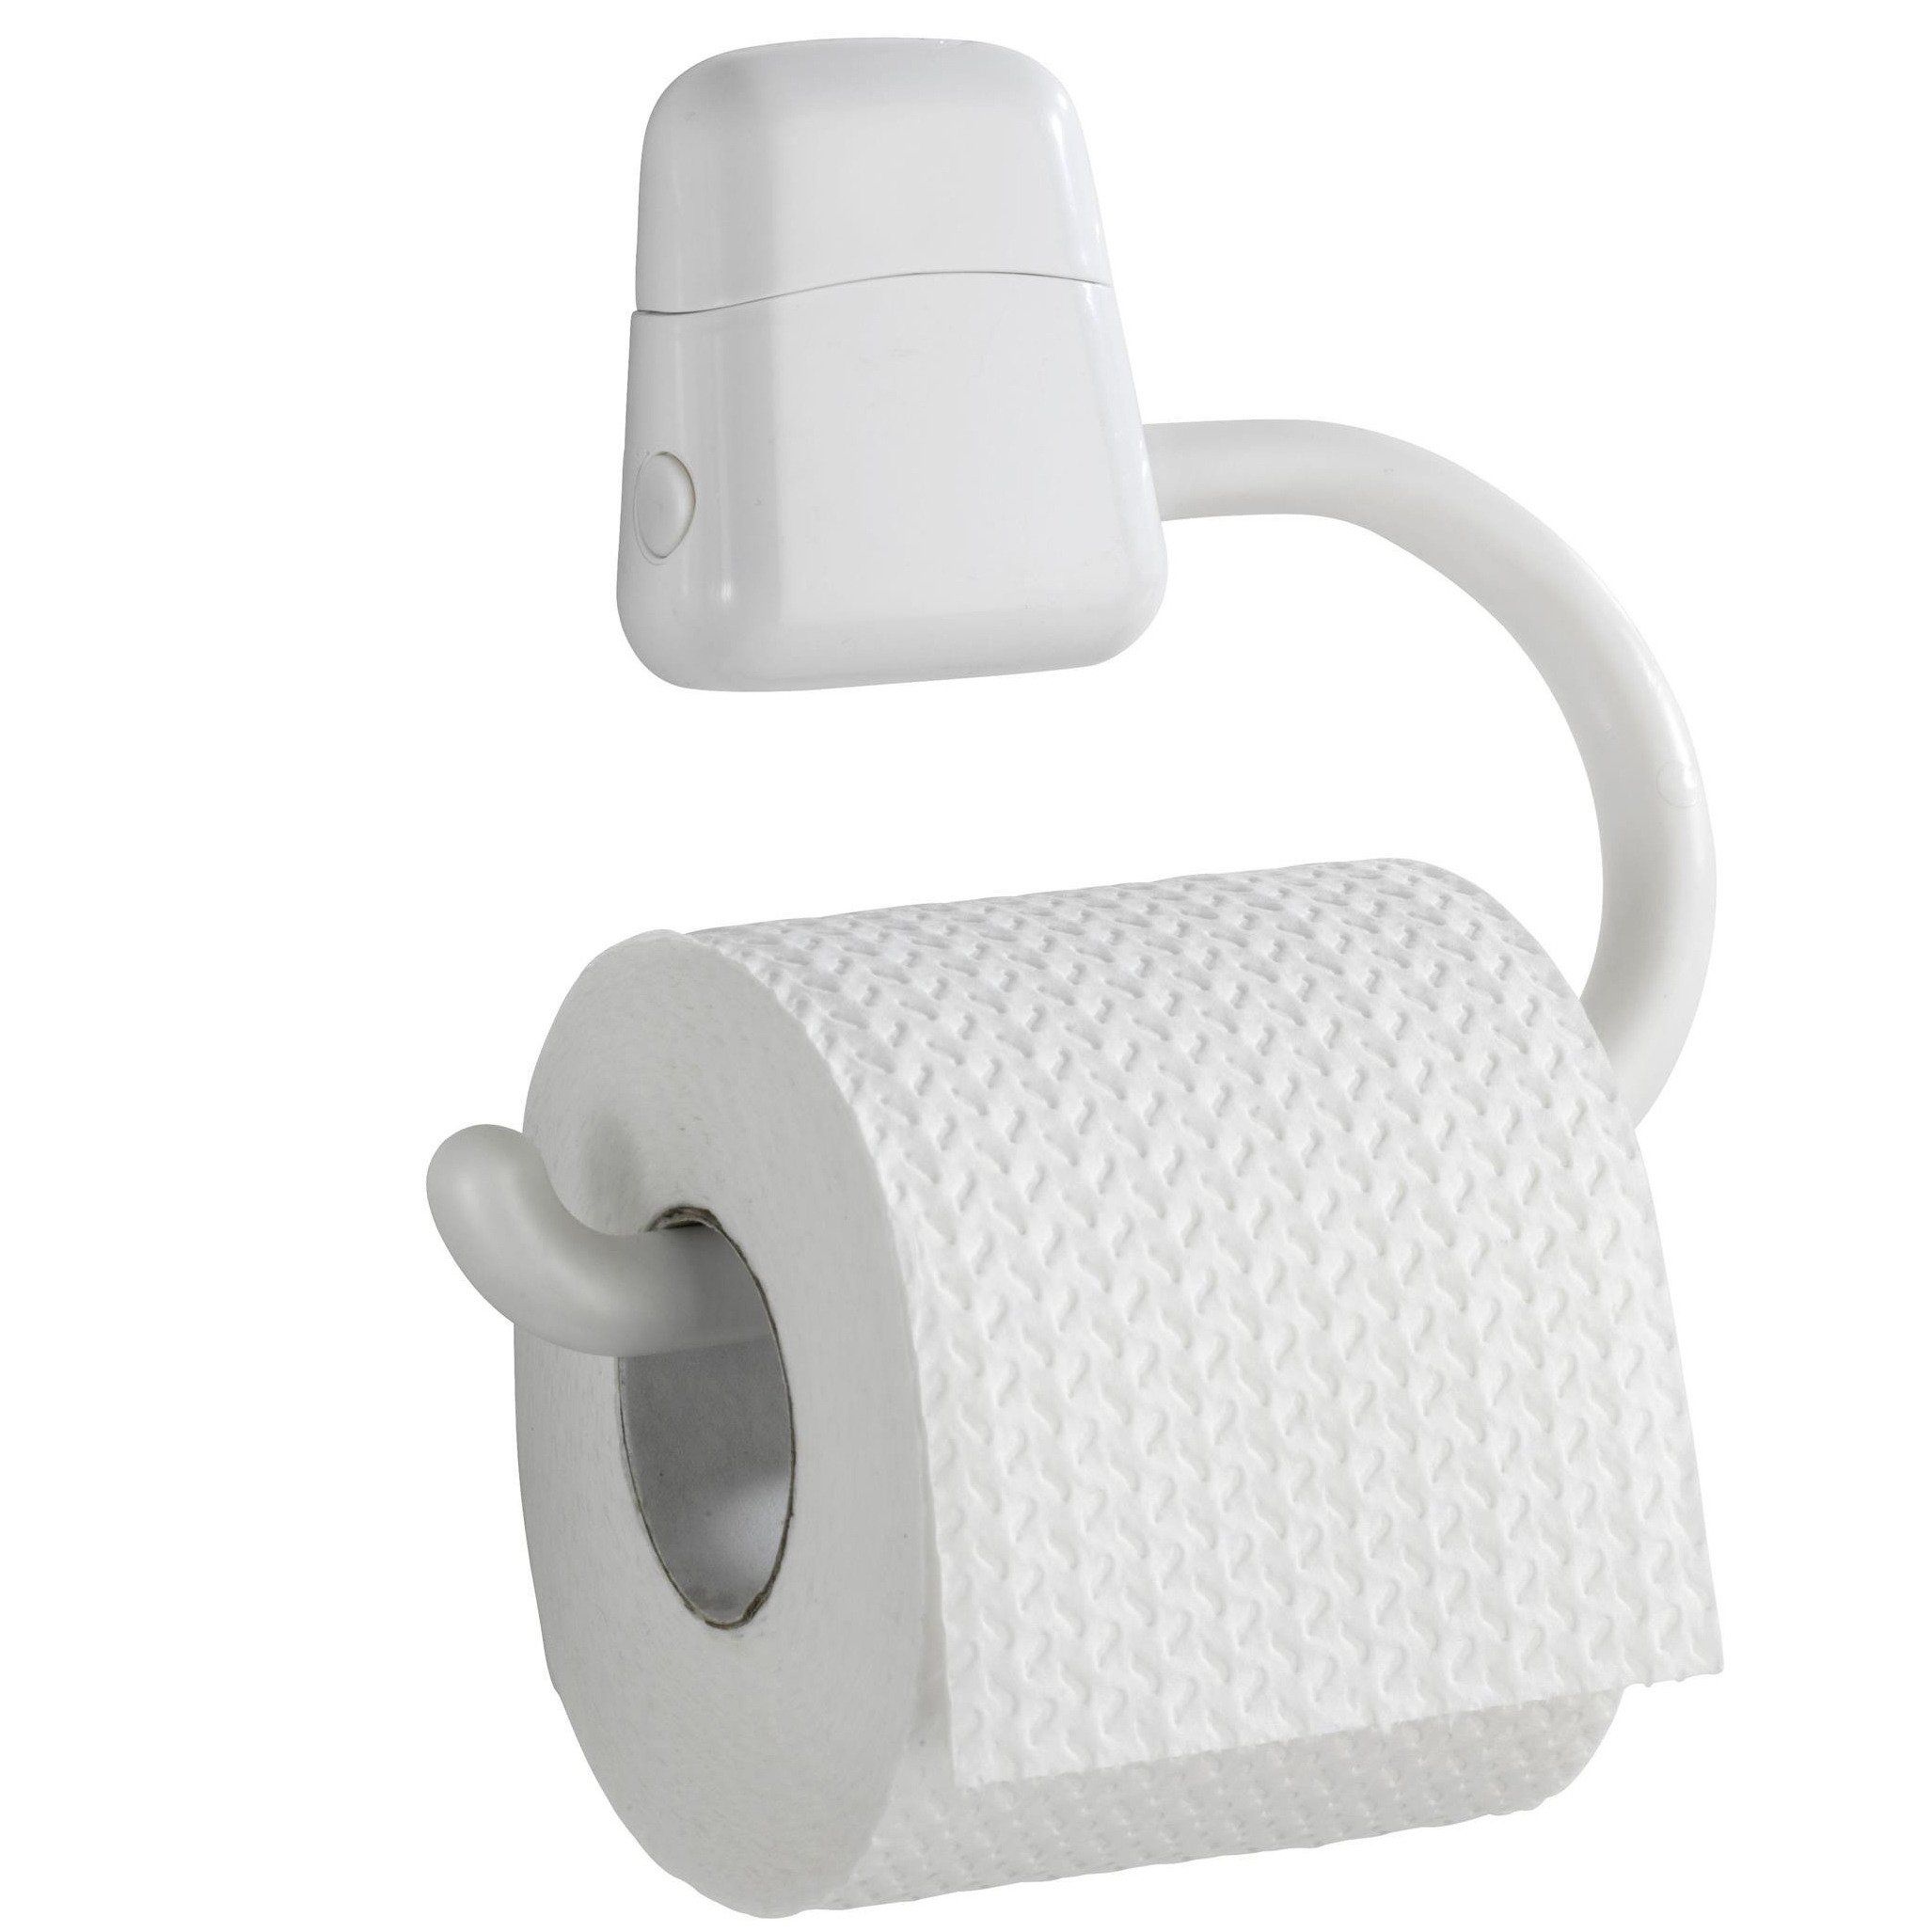 Stojan toaletního papíru PURE, bílá, WENKO - EDAXO.CZ s.r.o.